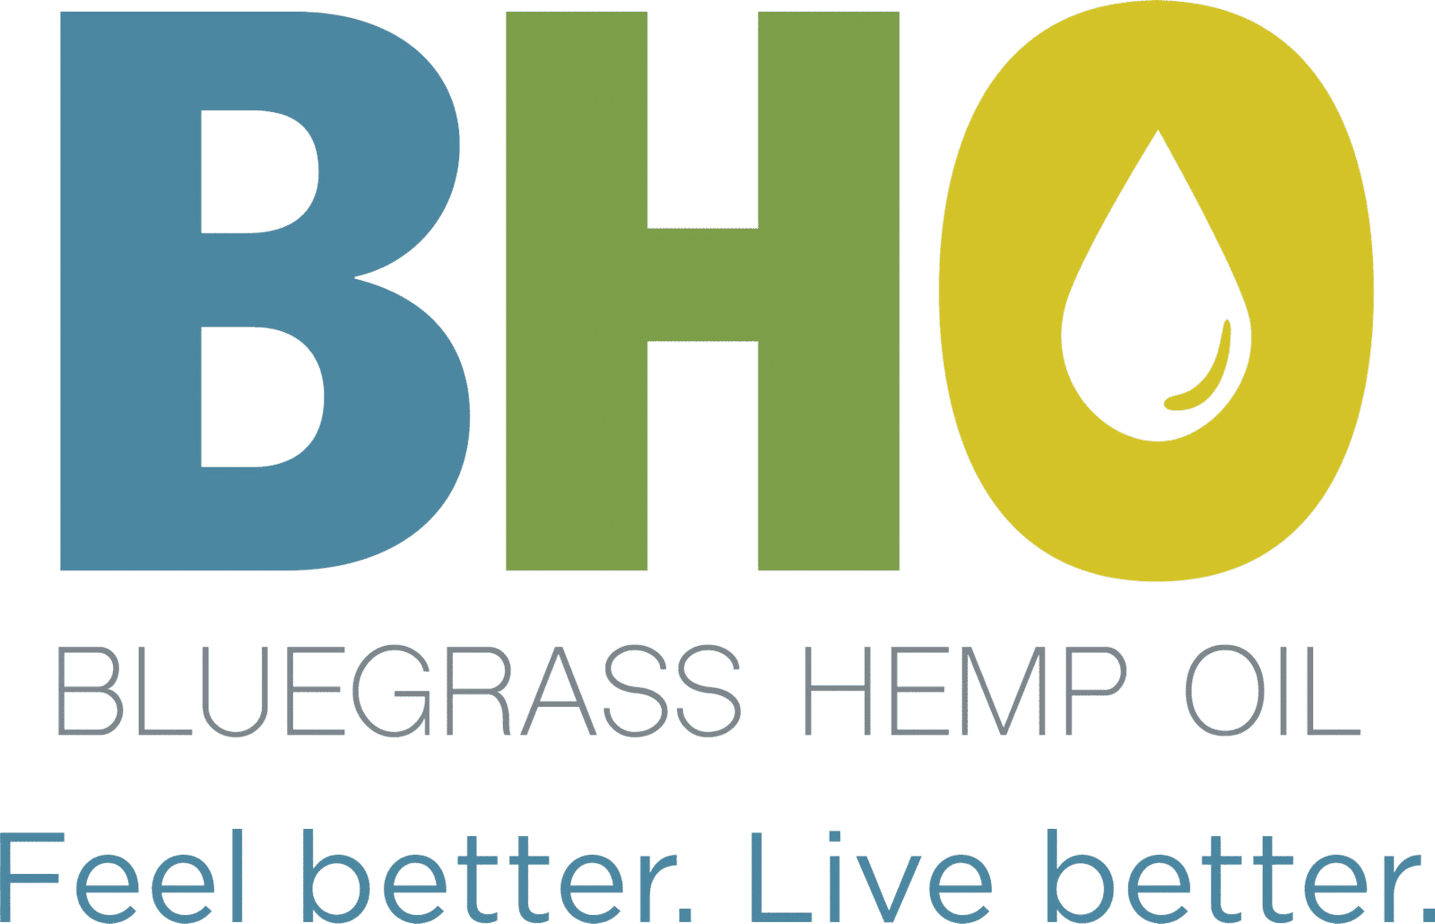 Bluegrass Hemp Oil